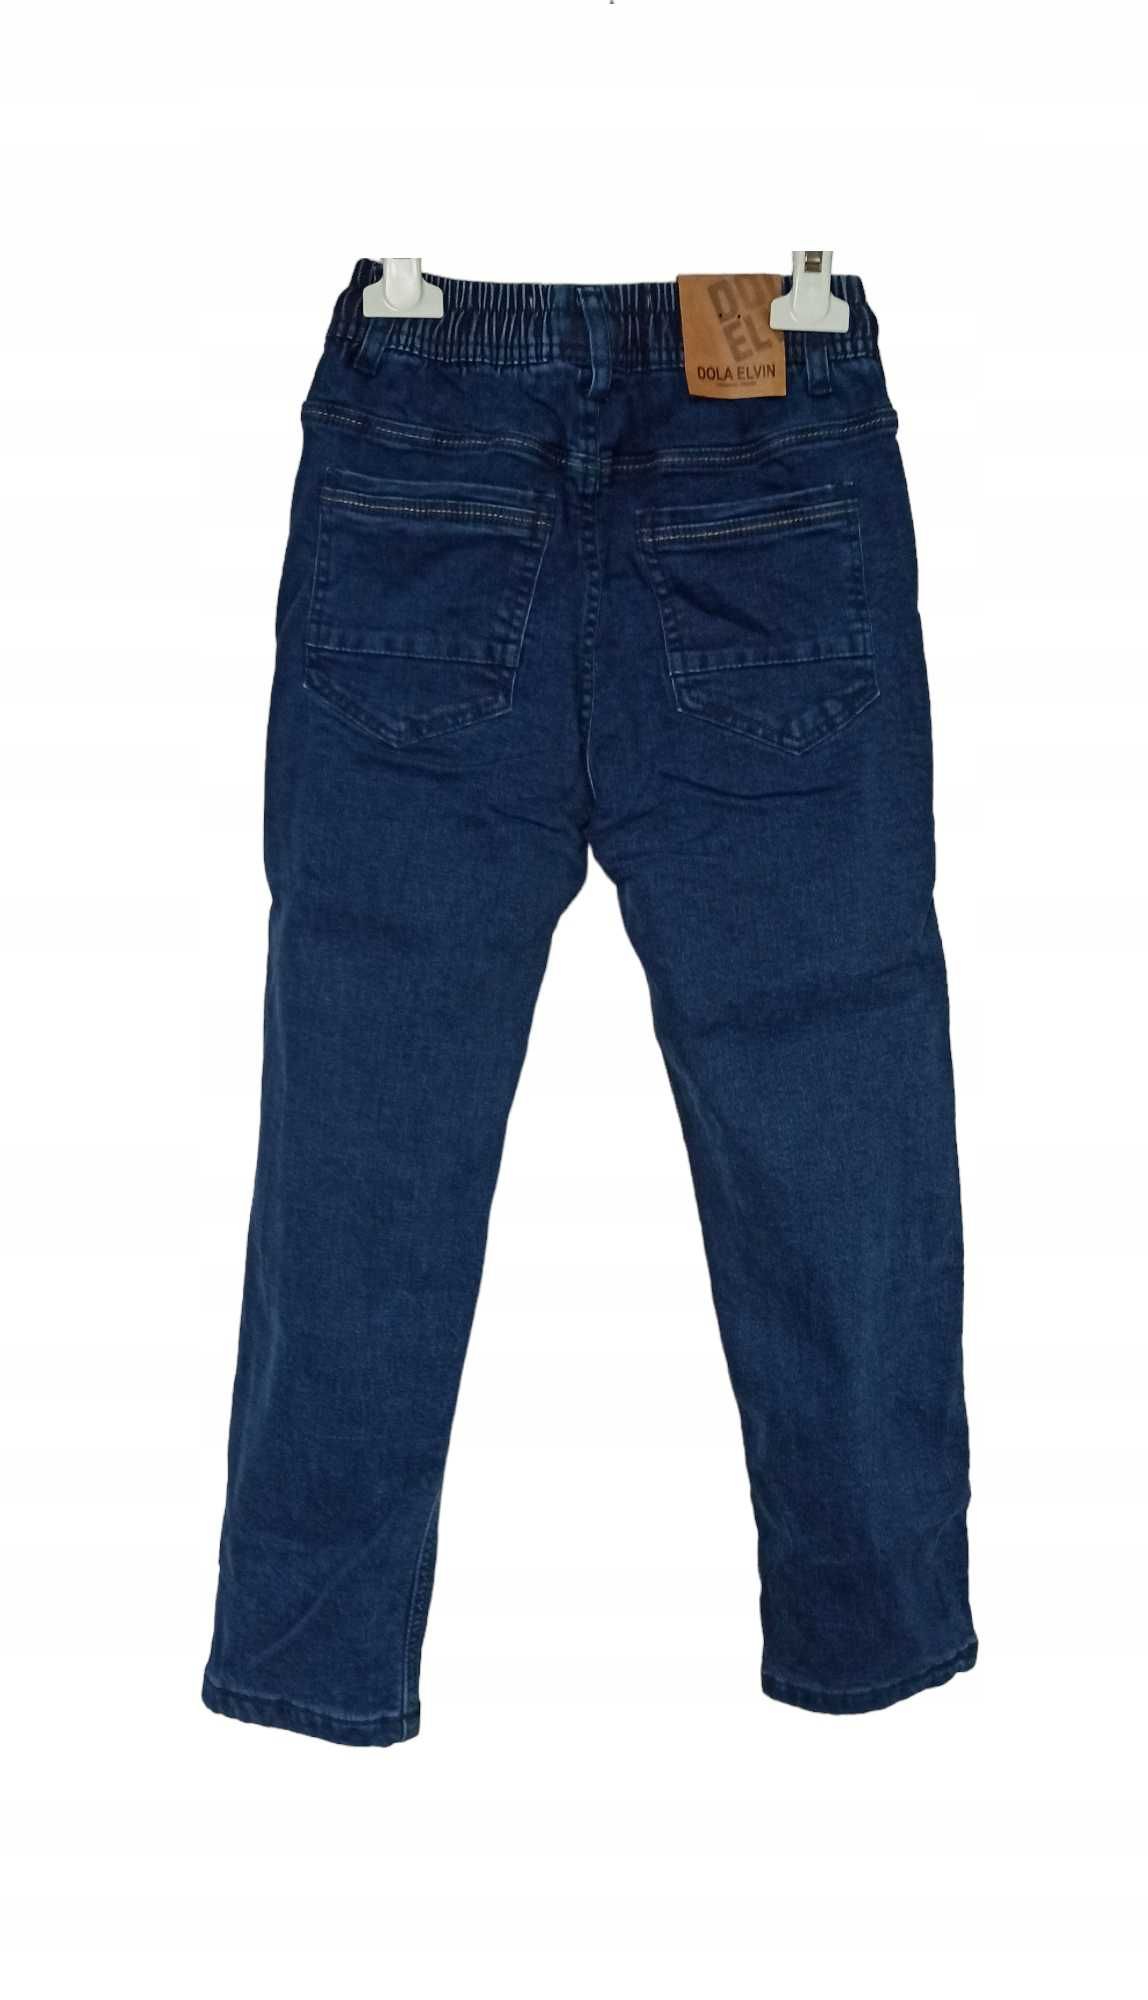 Spodnie Jeans miękkie elastyczne GUMA ocieplane polarem nowy 122-128